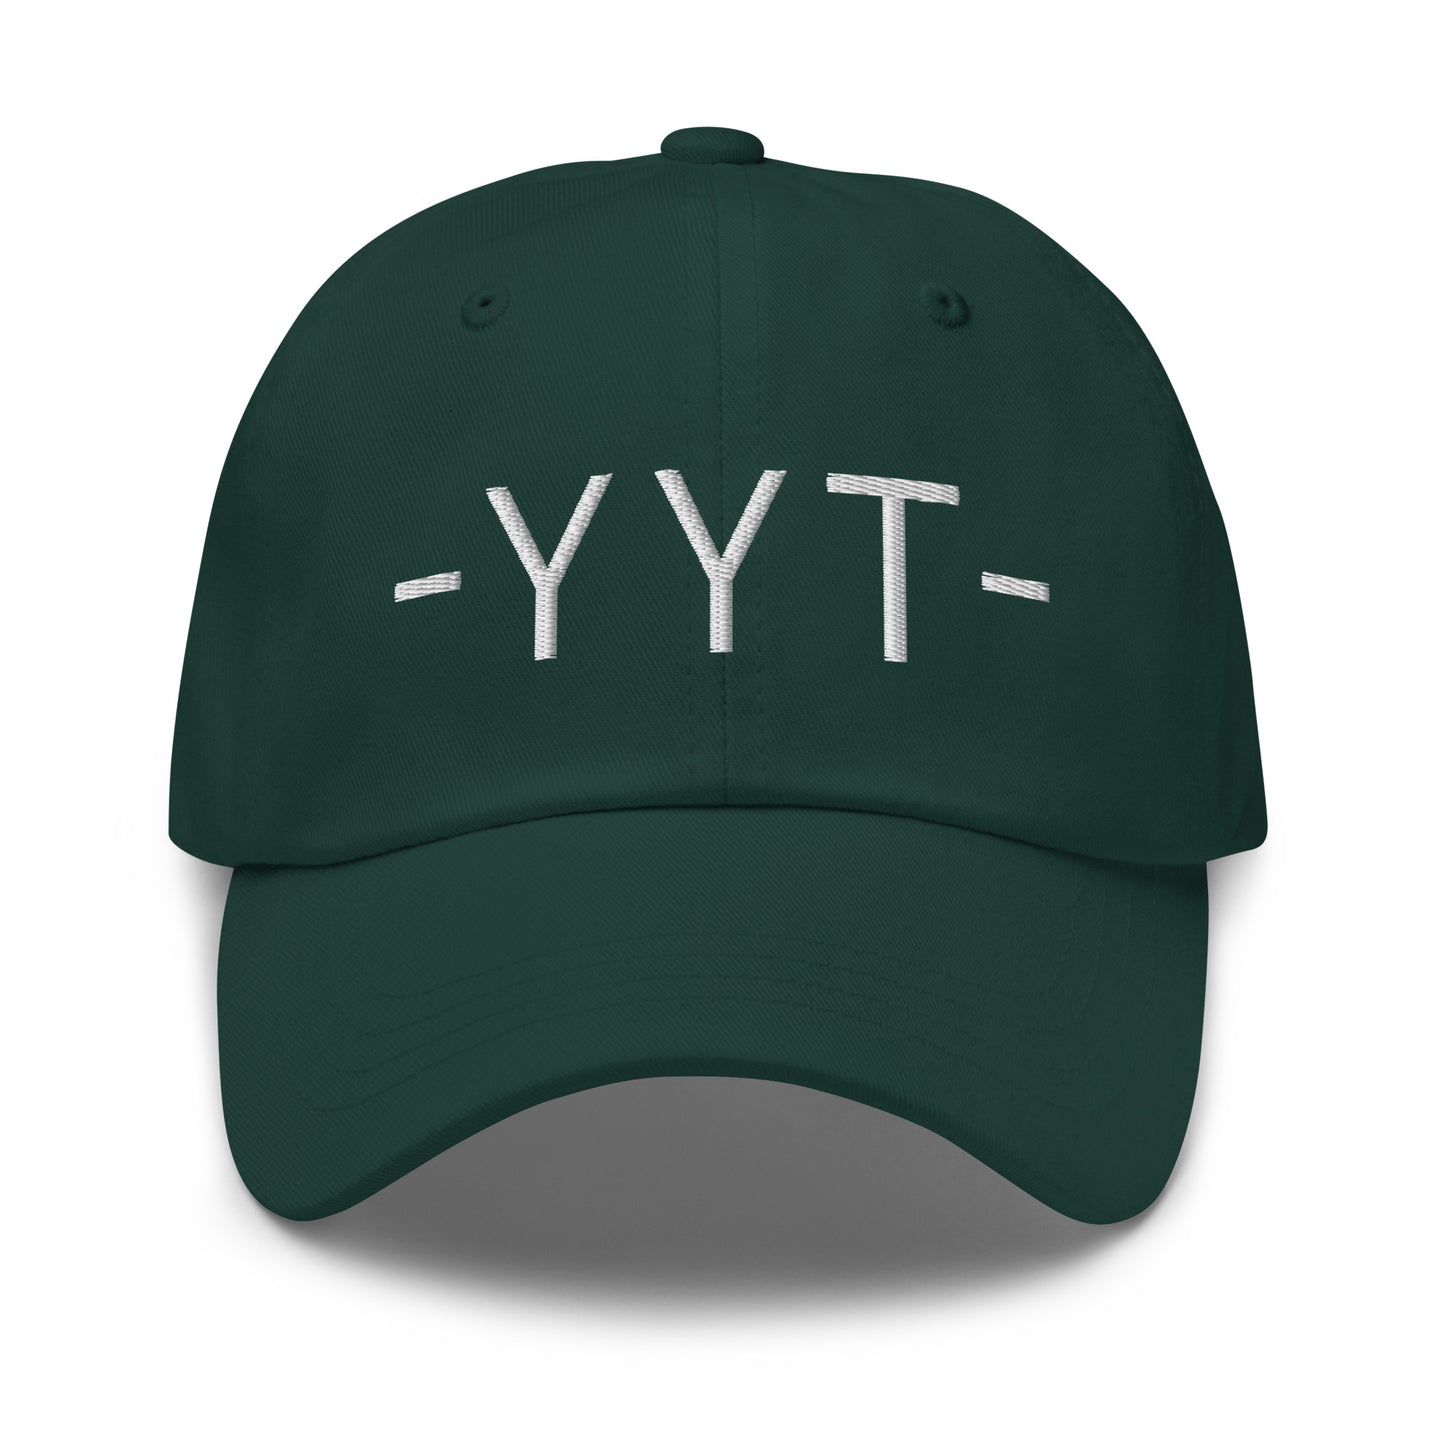 Souvenir Baseball Cap - White • YYT St. John's • YHM Designs - Image 17